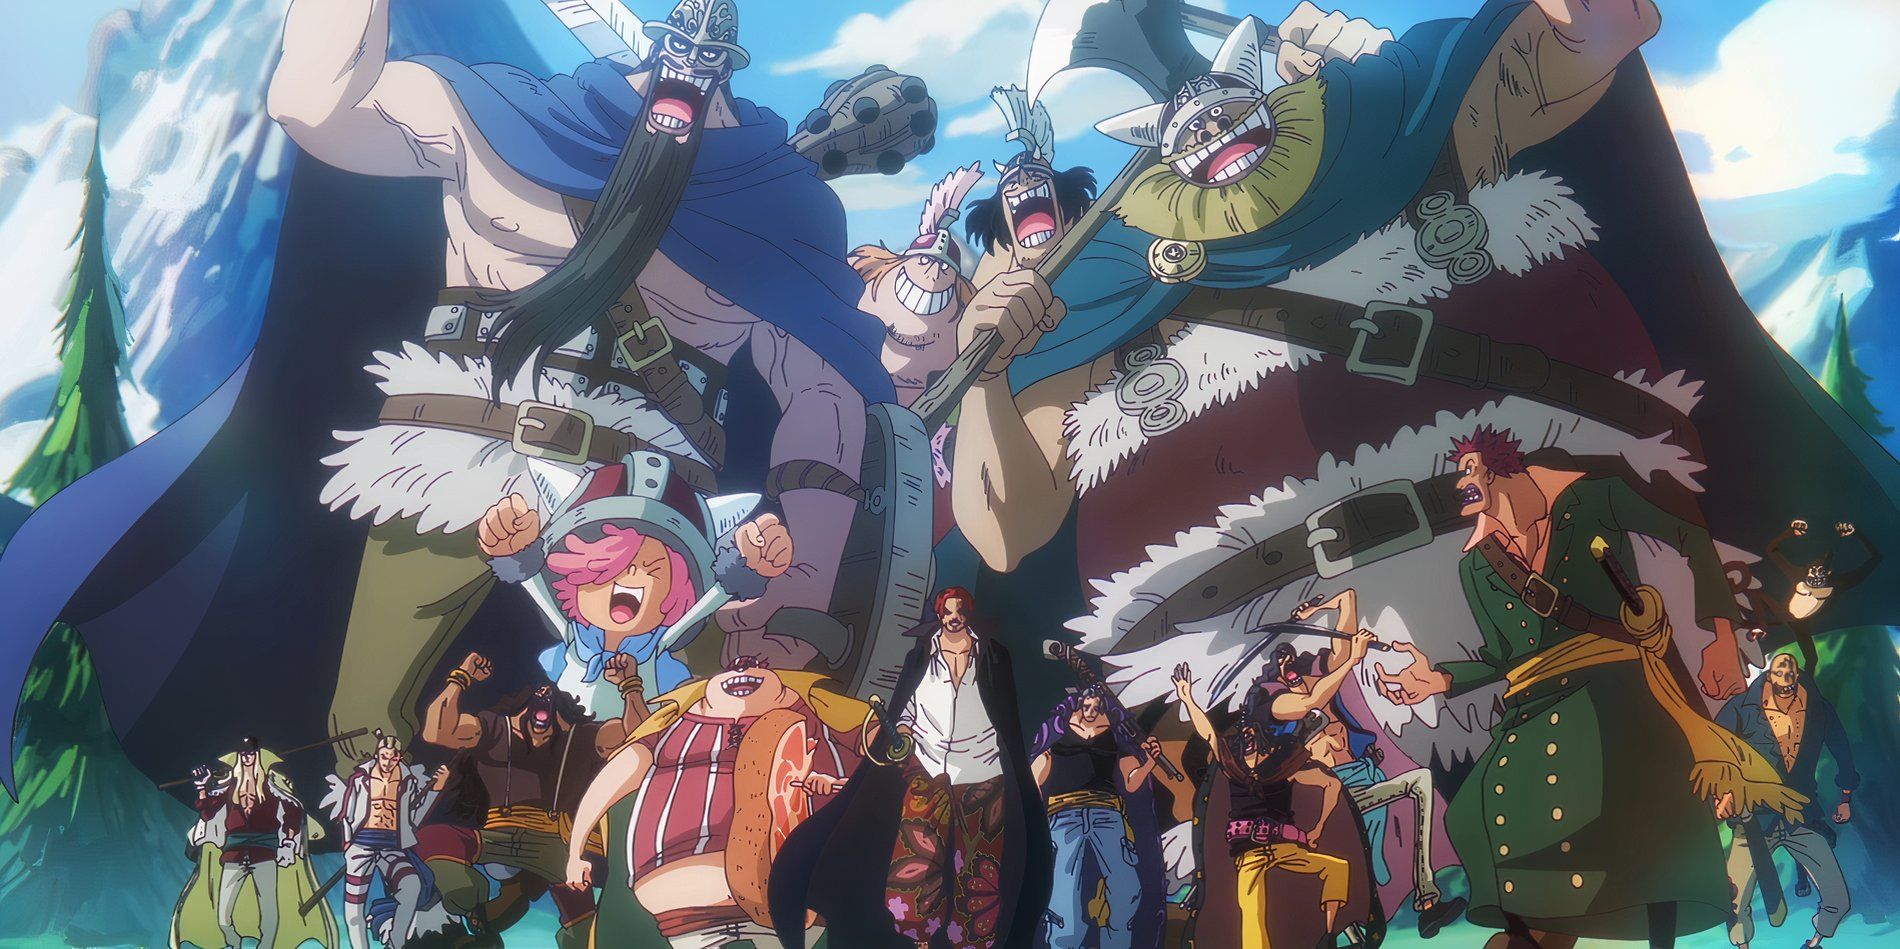 O episódio 1109 do anime One Piece mostra Elbaf junto com os gigantes Brogy e Dorry enquanto eles seguem Shanks e sua equipe para a batalha.